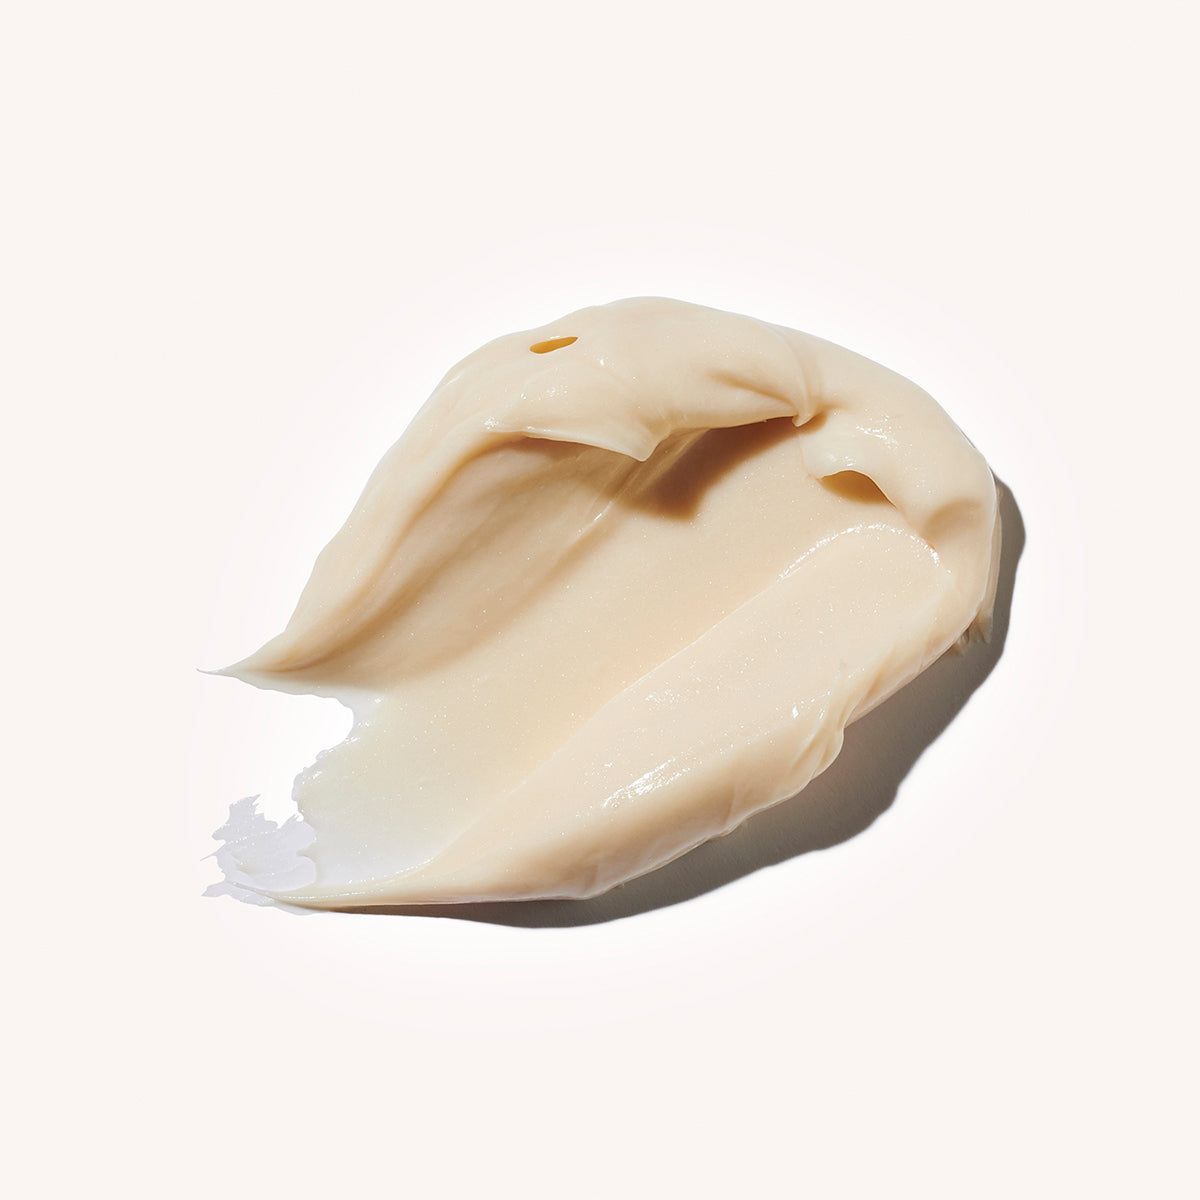 Rejuvenating Nutritious Face & Neck Cream